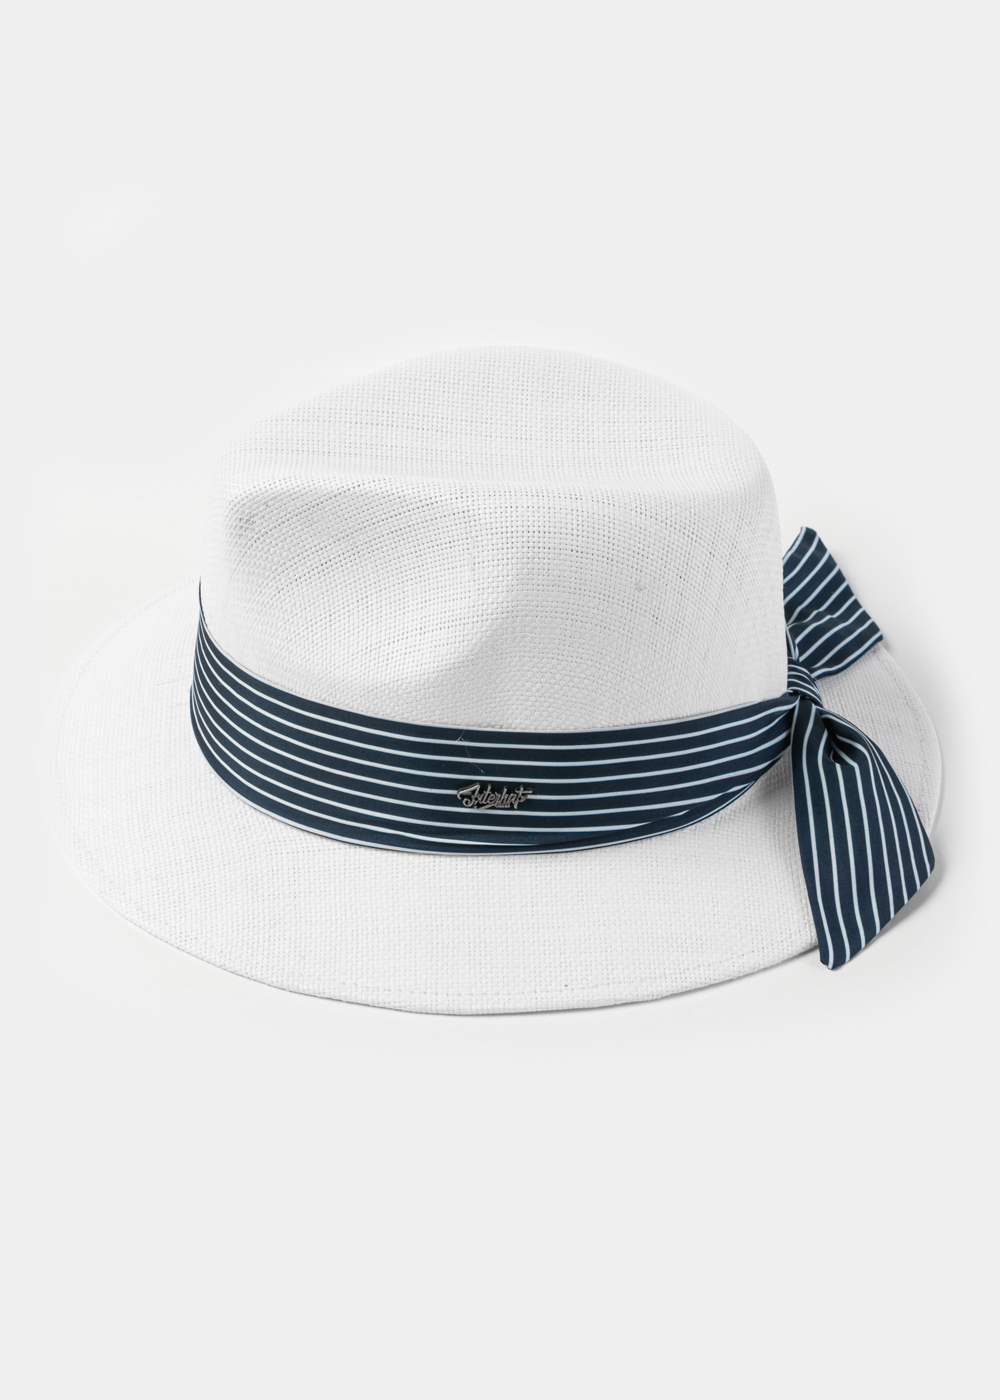  White Panama Style Hat w/ Striped Hatband 